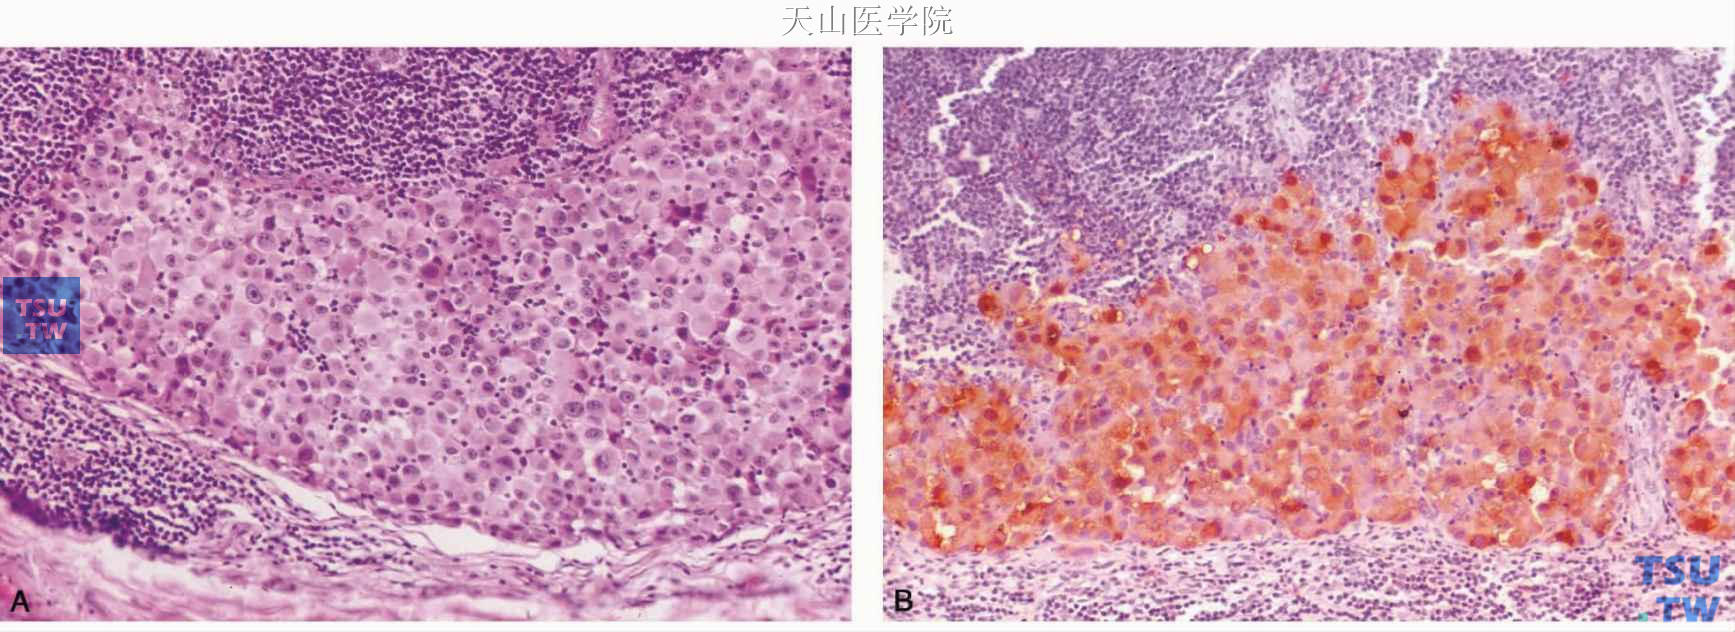 腮腺转移性黑色素瘤 A.耳廓黑色素瘤转移至腮腺淋巴结（左图）；B.肿瘤细胞HMB45免疫组织化学染色阳性